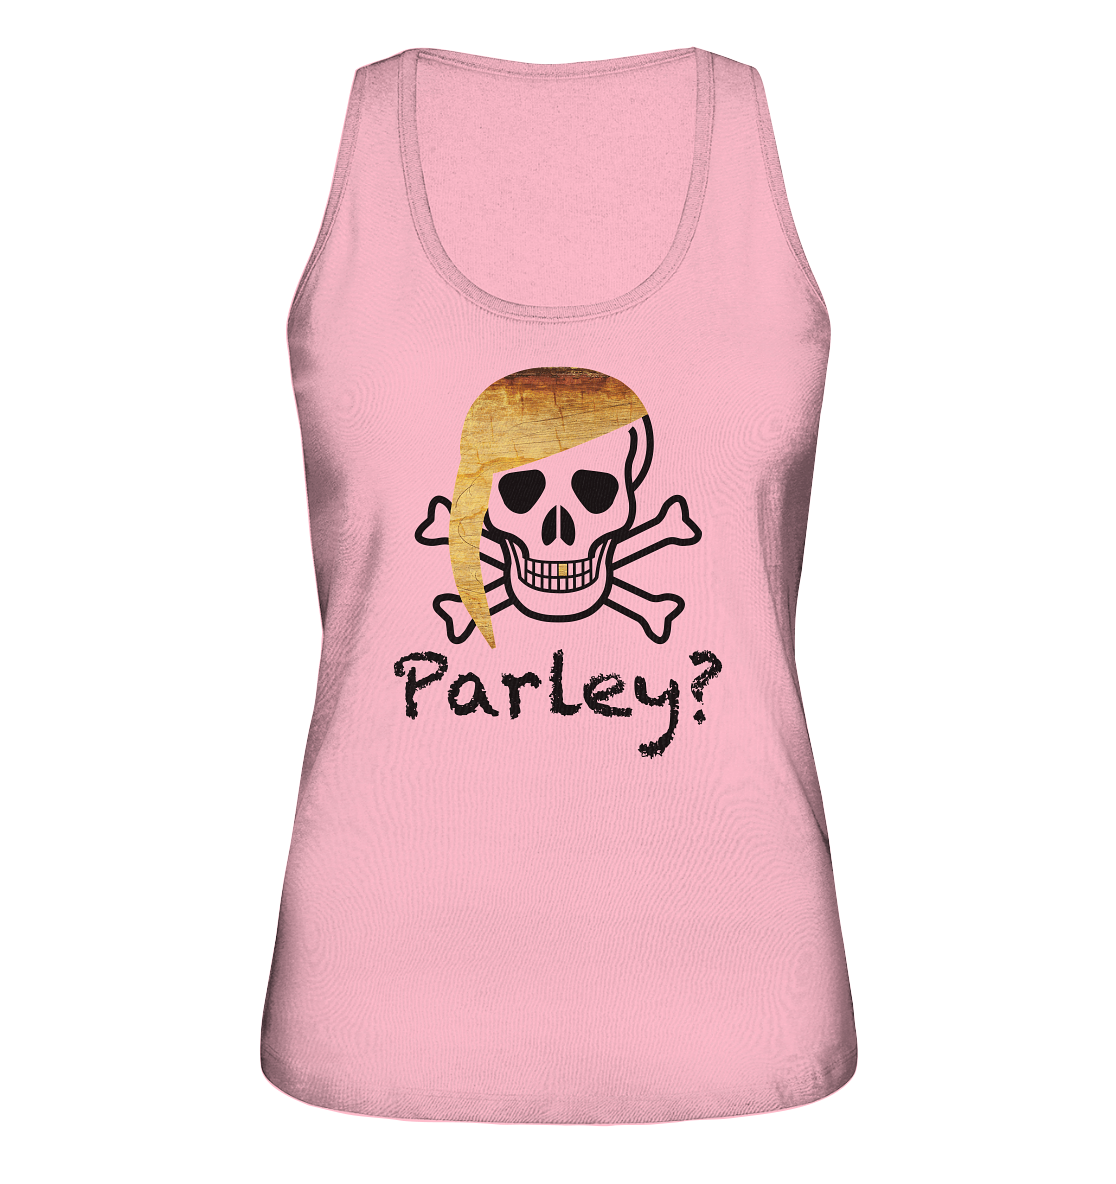 Parley? - Ladies Organic Tank-Top